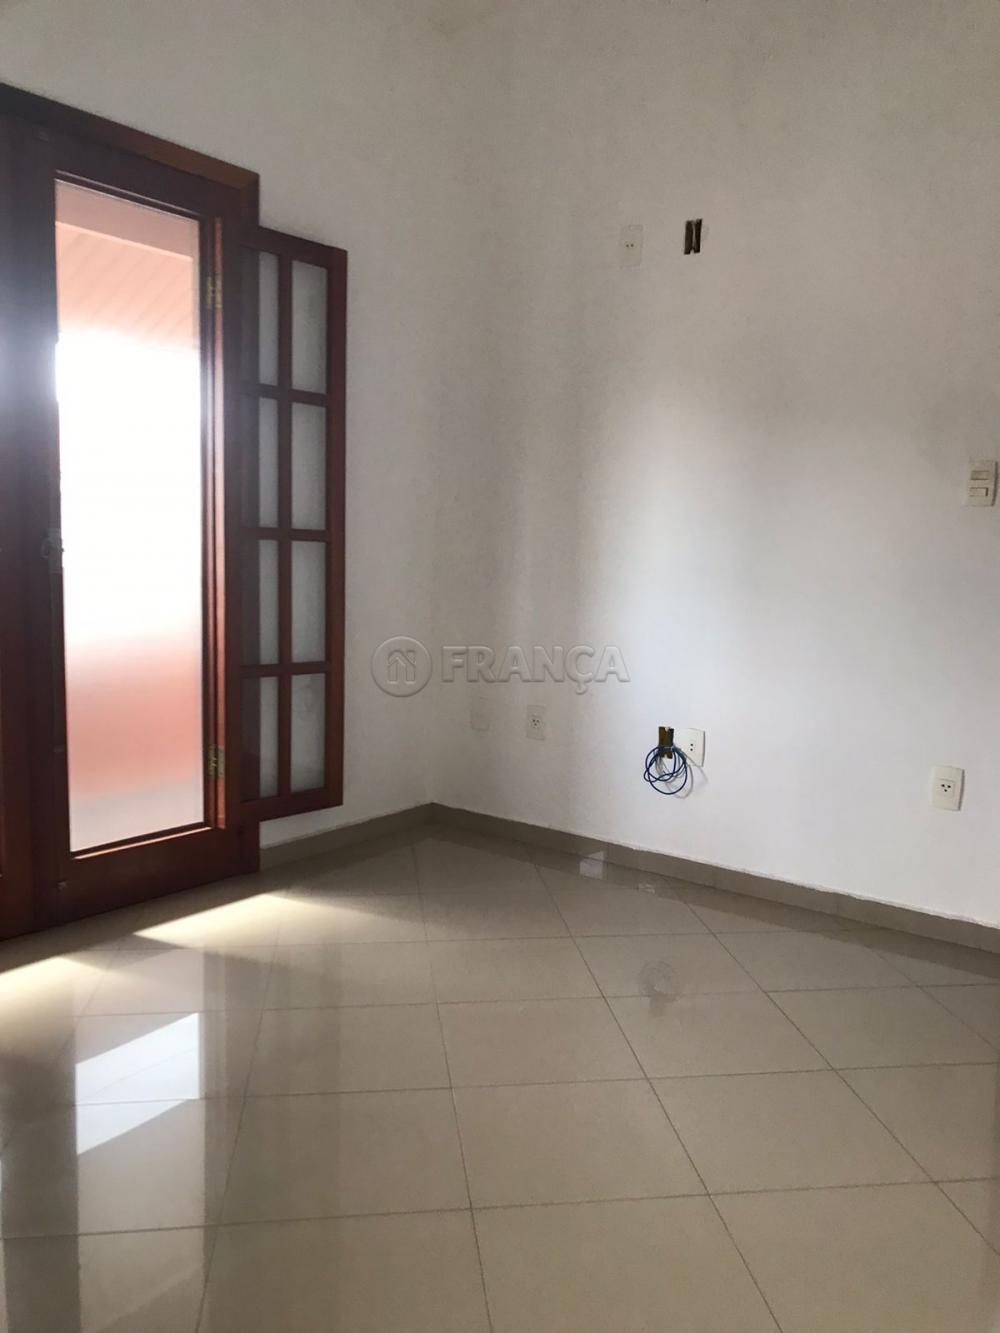 Comprar Casa / Condomínio em Jacareí R$ 900.000,00 - Foto 14